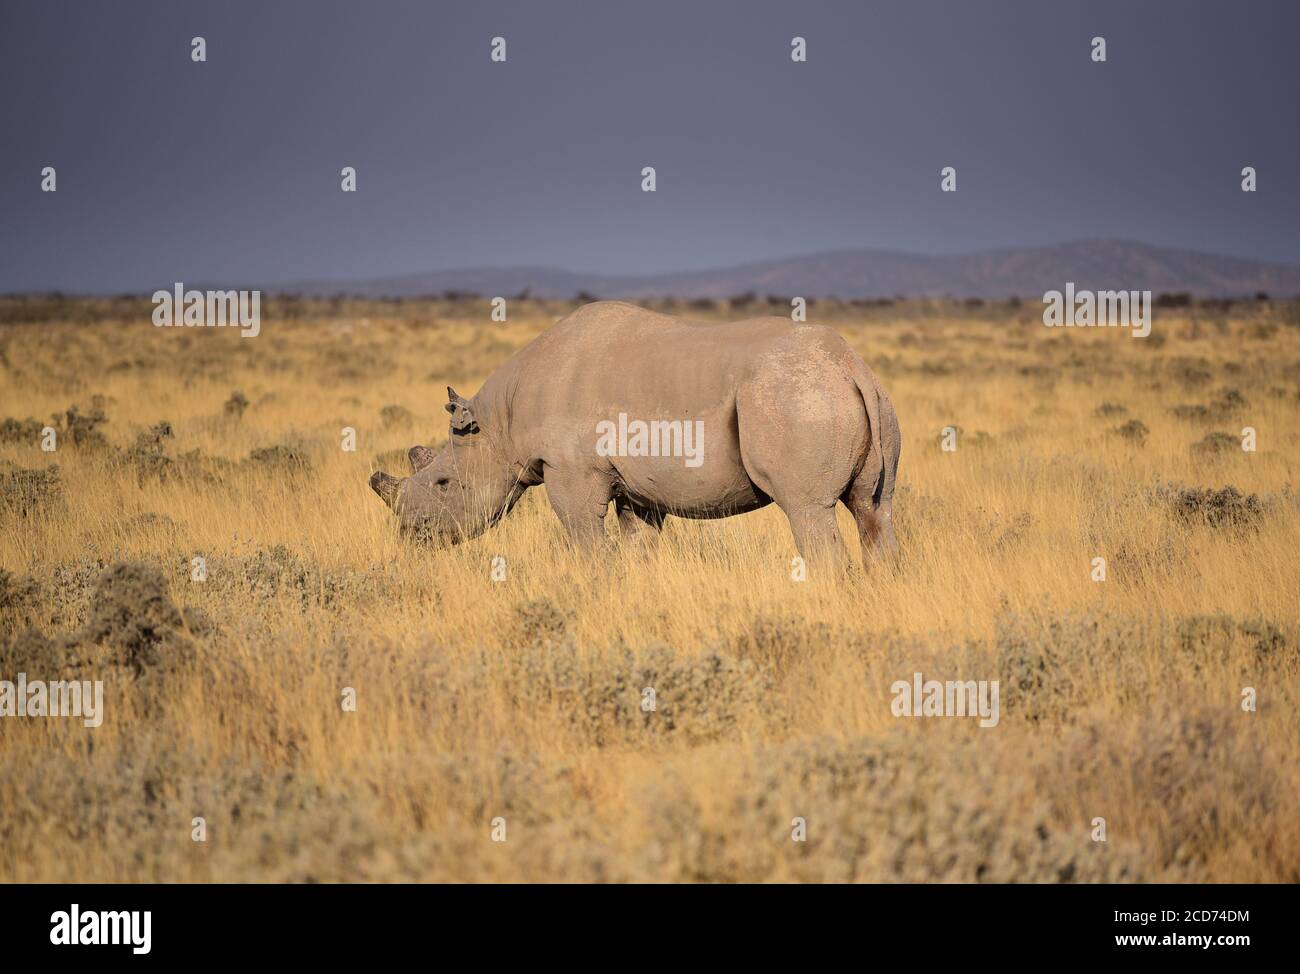 Black rhinoceros or hook-lipped rhinoceros (Diceros bicornis) with cut horns. Etosha National Park, Namibia Stock Photo